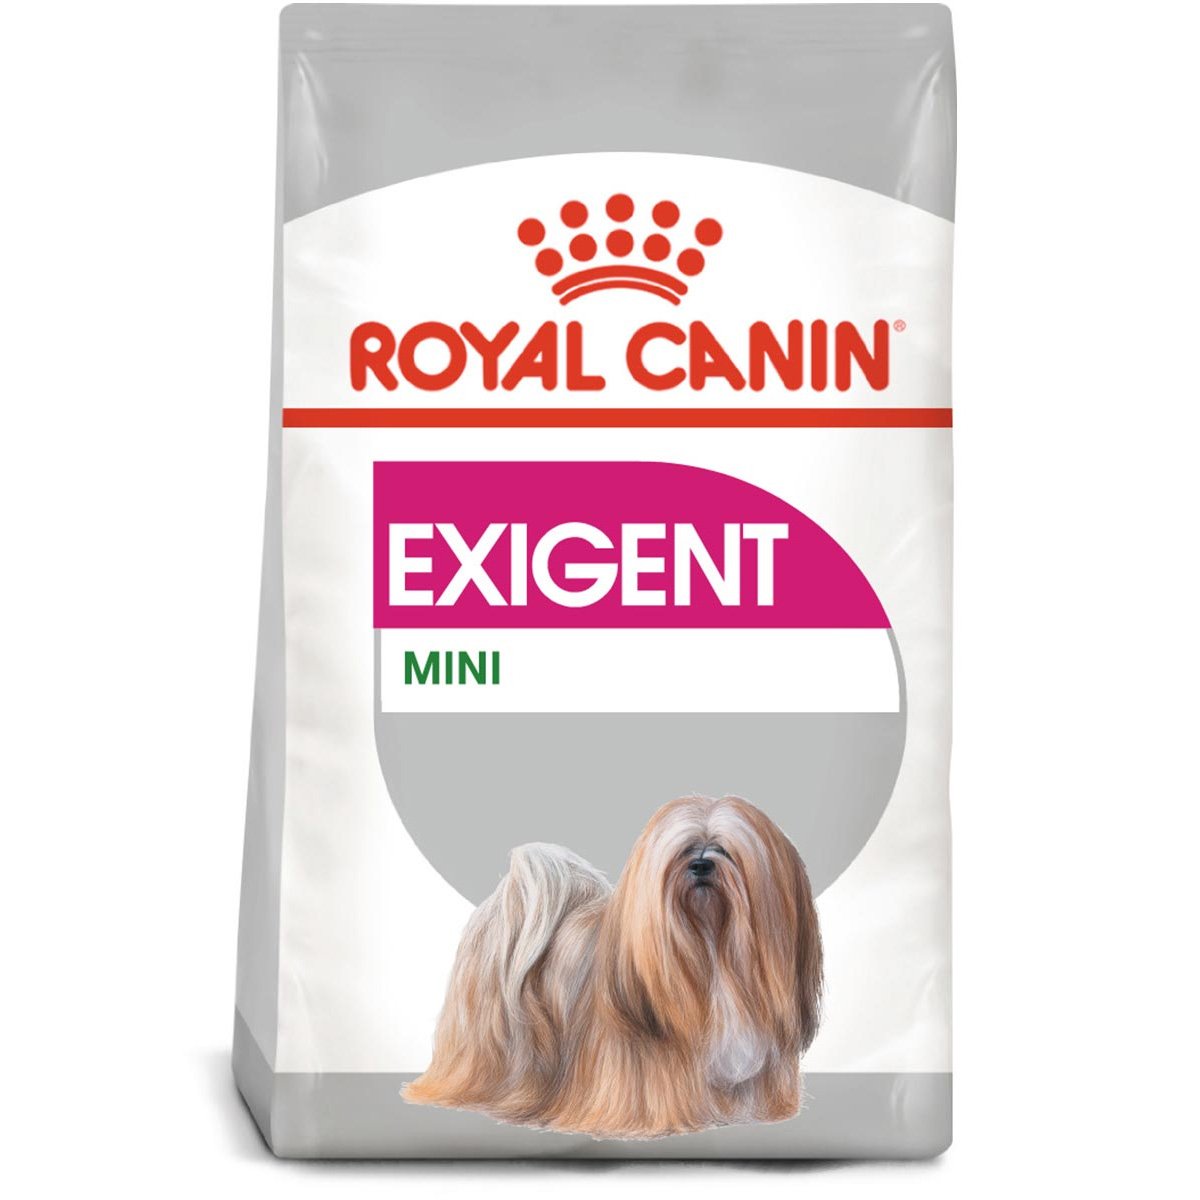 ROYAL CANIN EXIGENT MINI Trockenfutter für wählerische kleine Hunde 3kg von Royal Canin